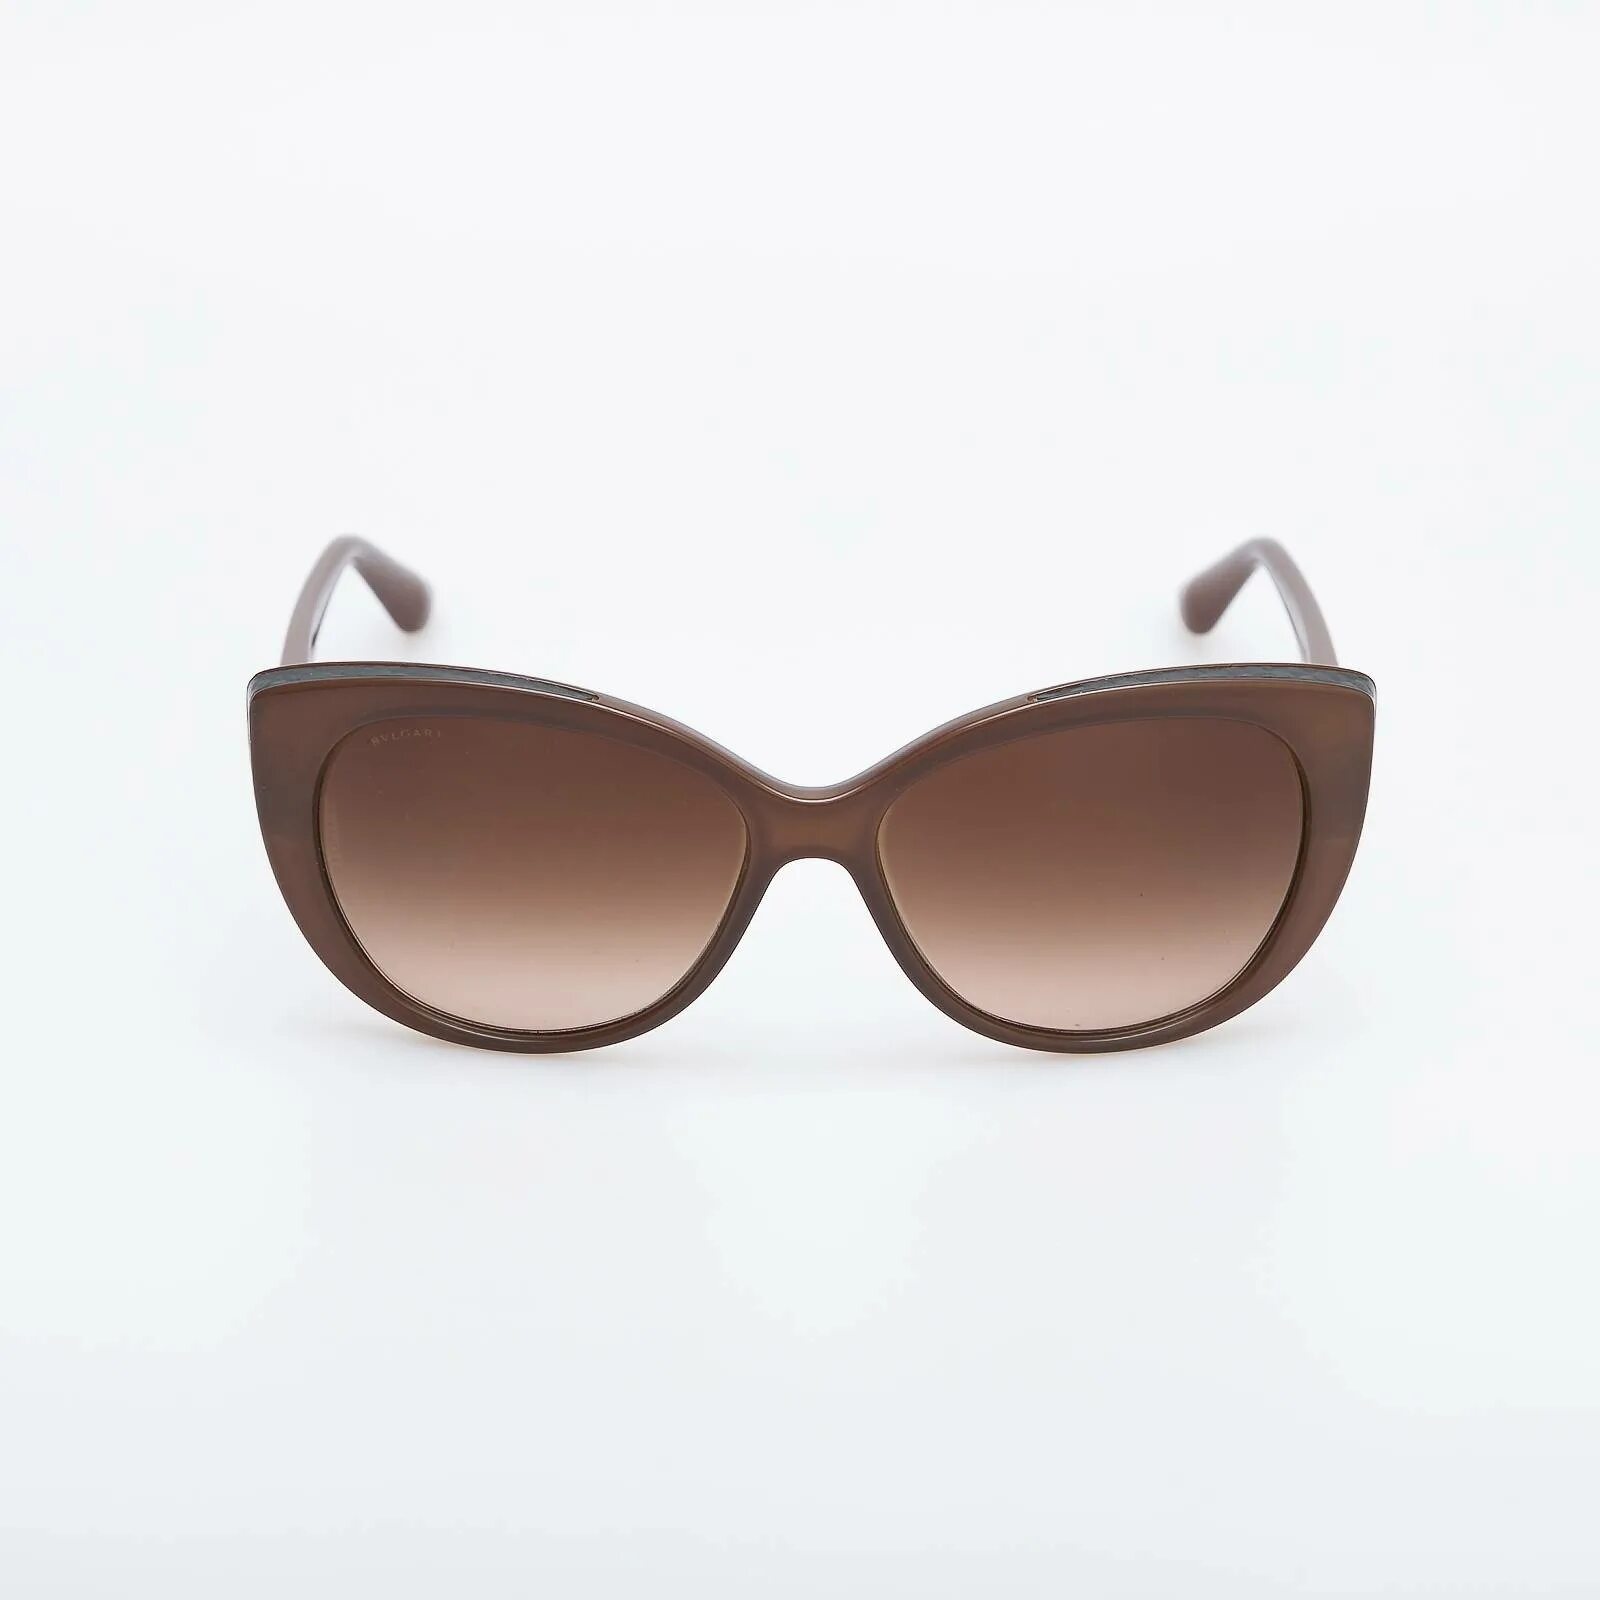 Очки Emporio Armani New York. Очки солнцезащитные женские коричневые. Солнечные очки коричневые. Солнечные очки коричневые женские.